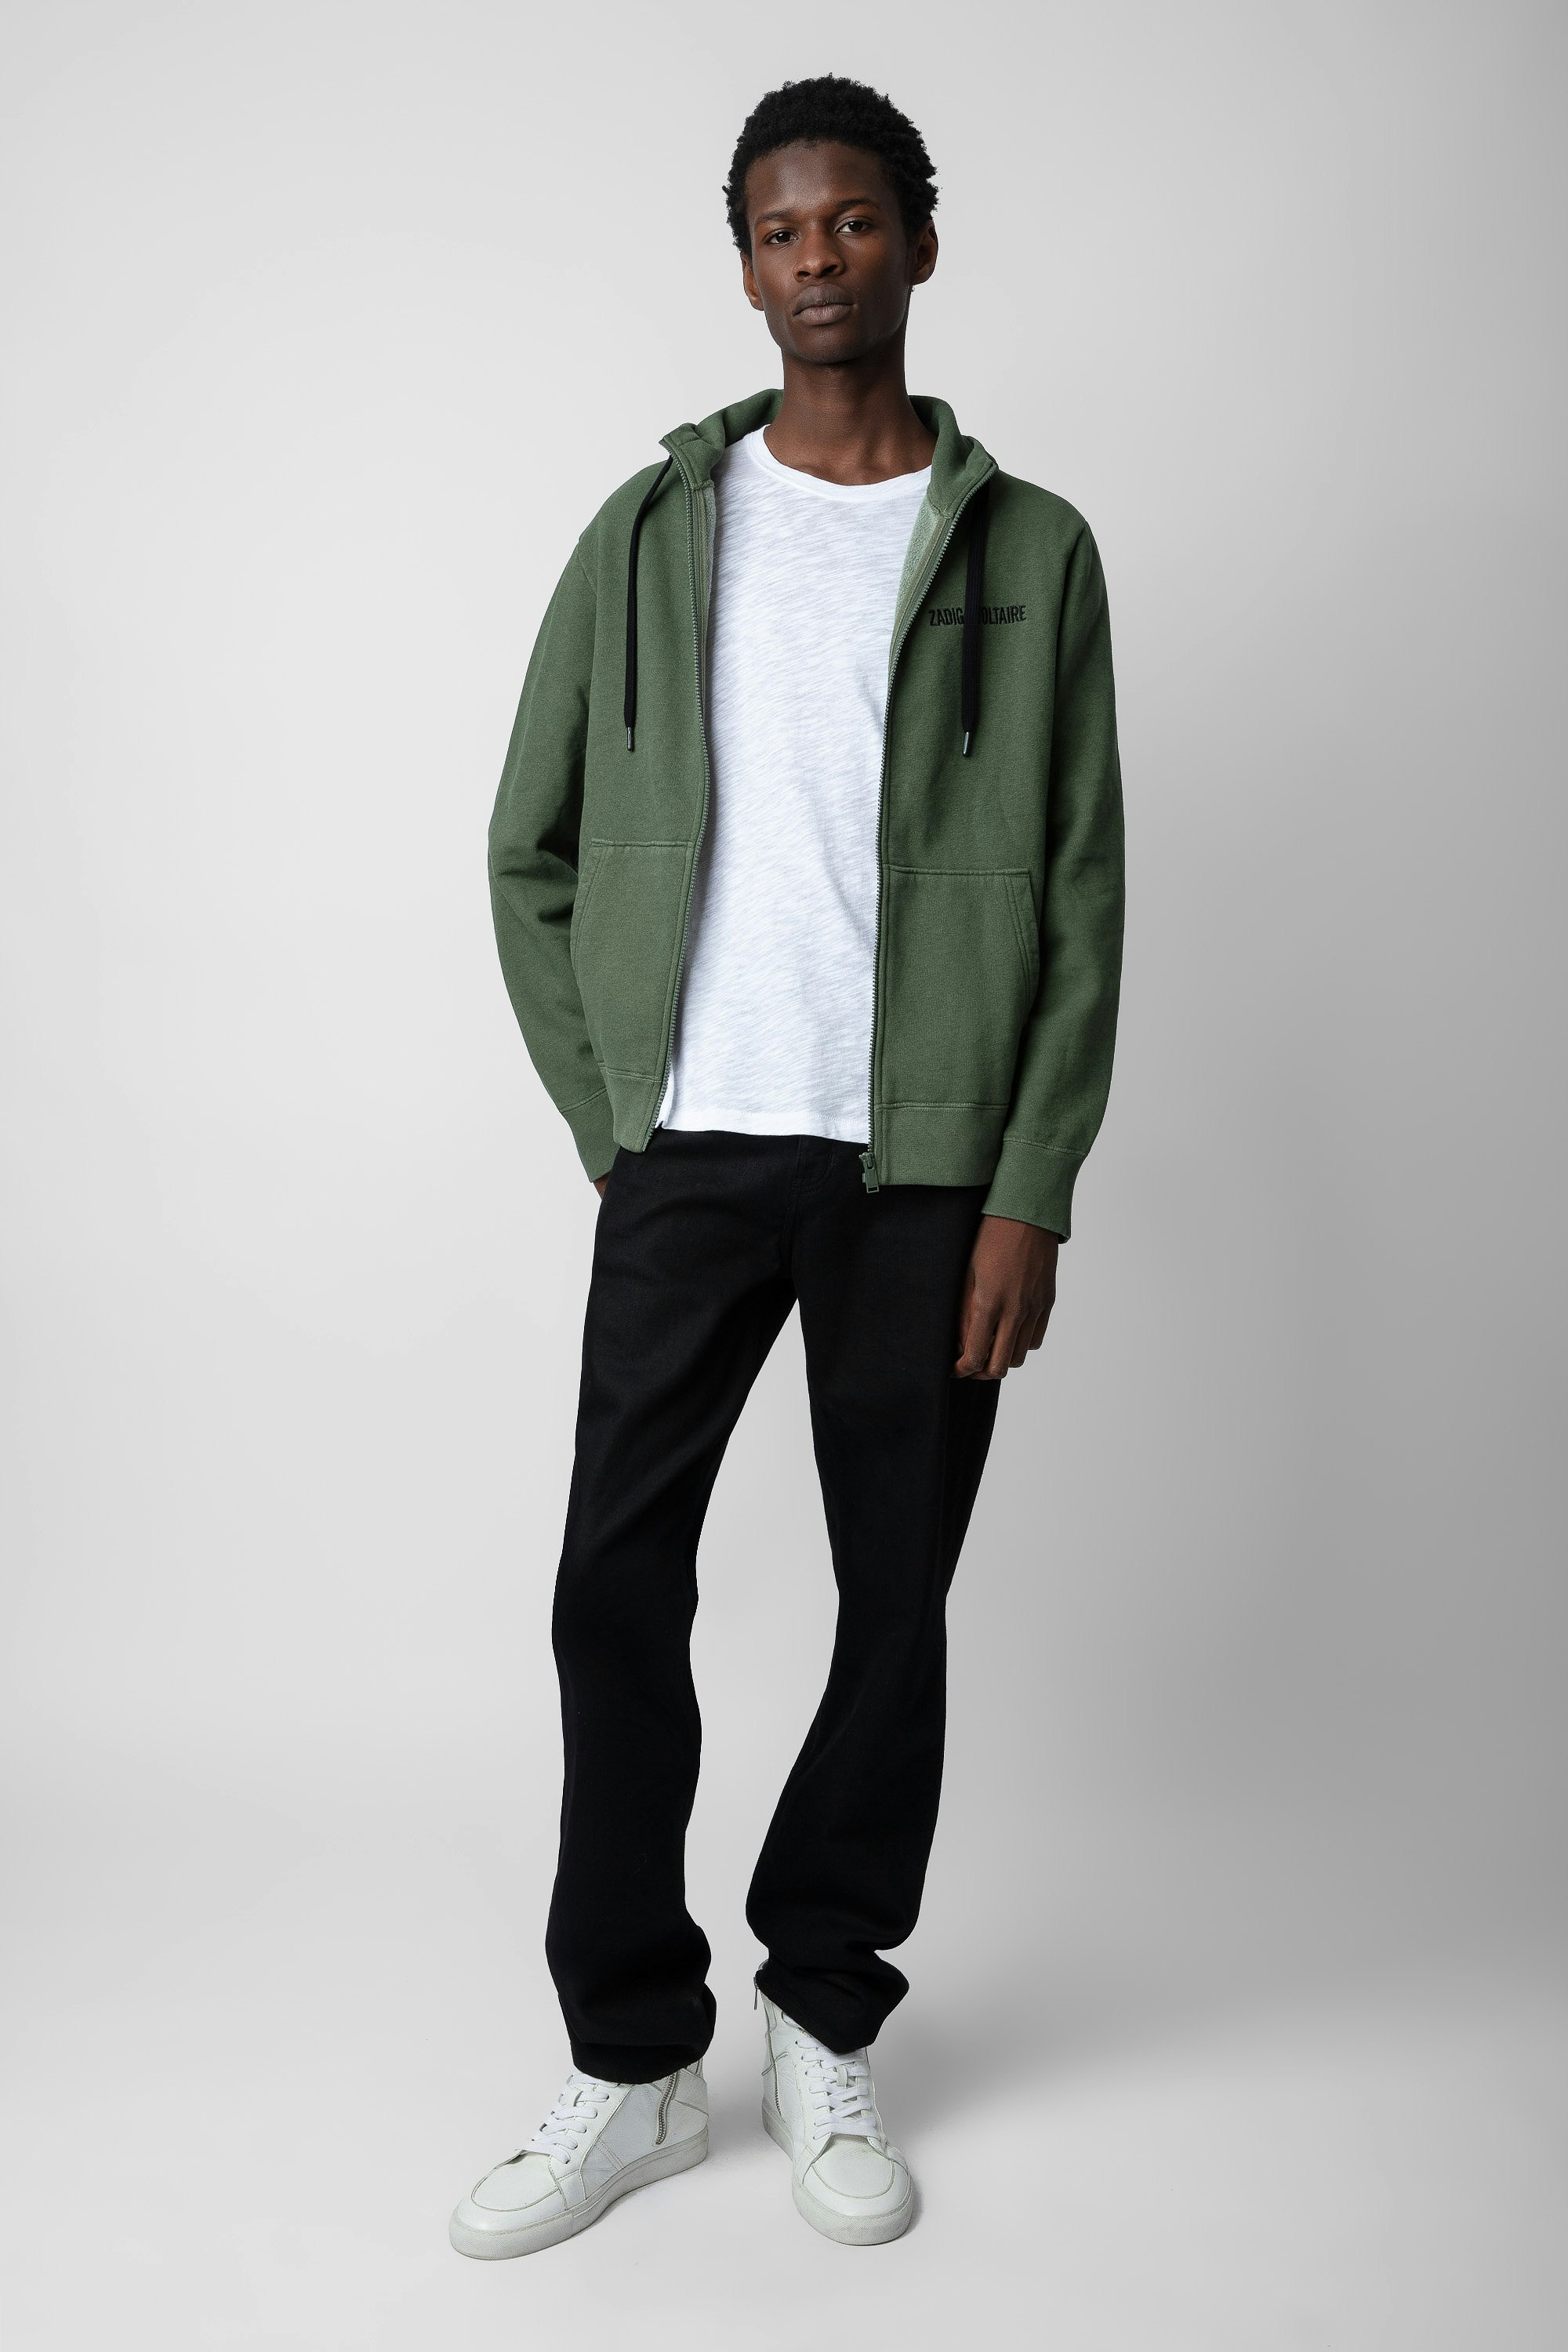 Alex Sweatshirt - Men’s khaki zip-up hooded sweatshirt with logo and “Art is Truth” concert print.